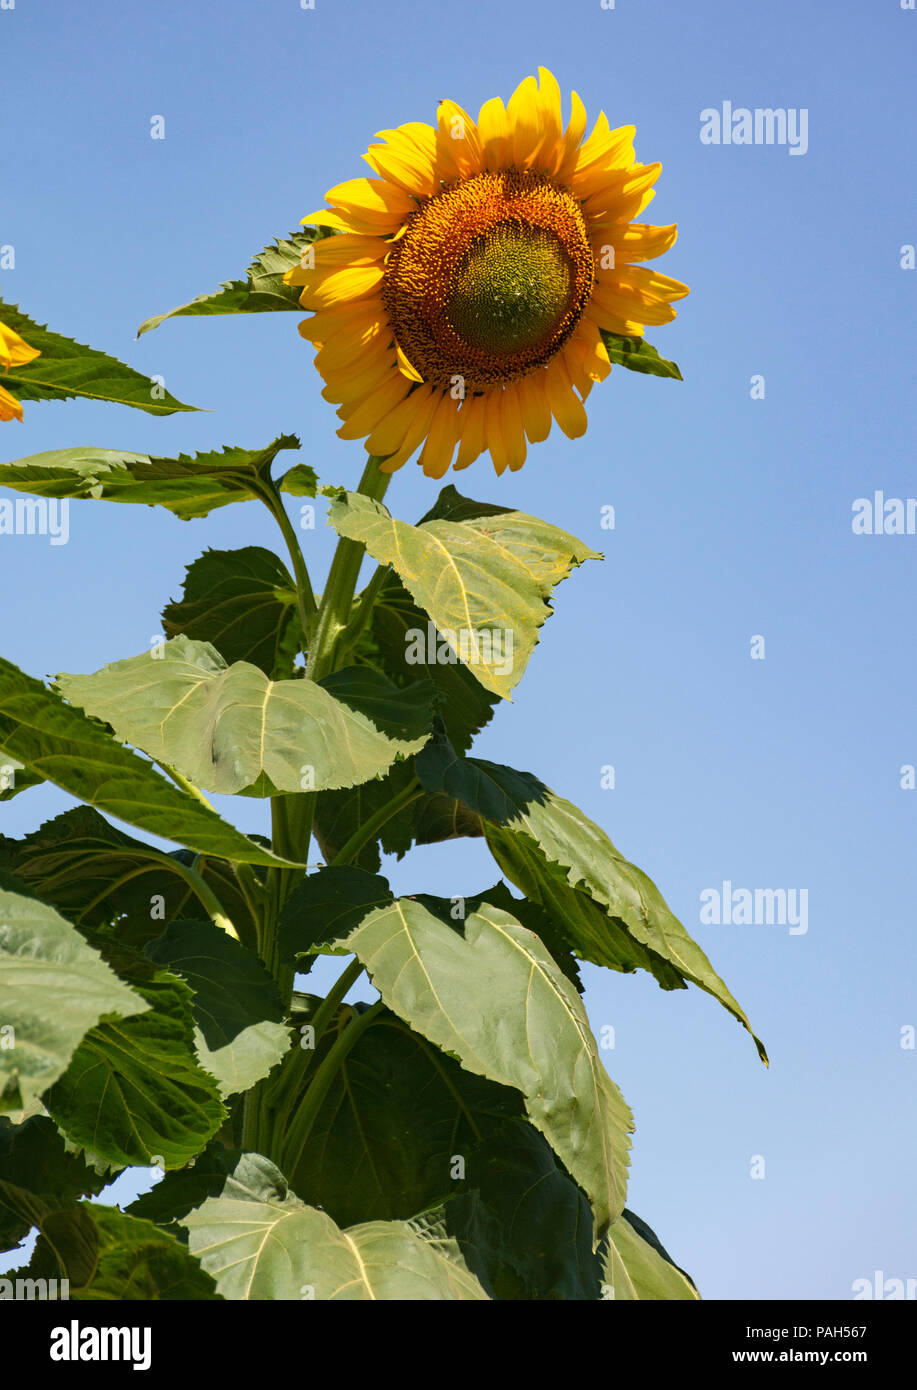 Eine gigantische Sonnenblume hoch über der Fotograf mit einem klaren blauen Himmel Hintergrund Stockfoto